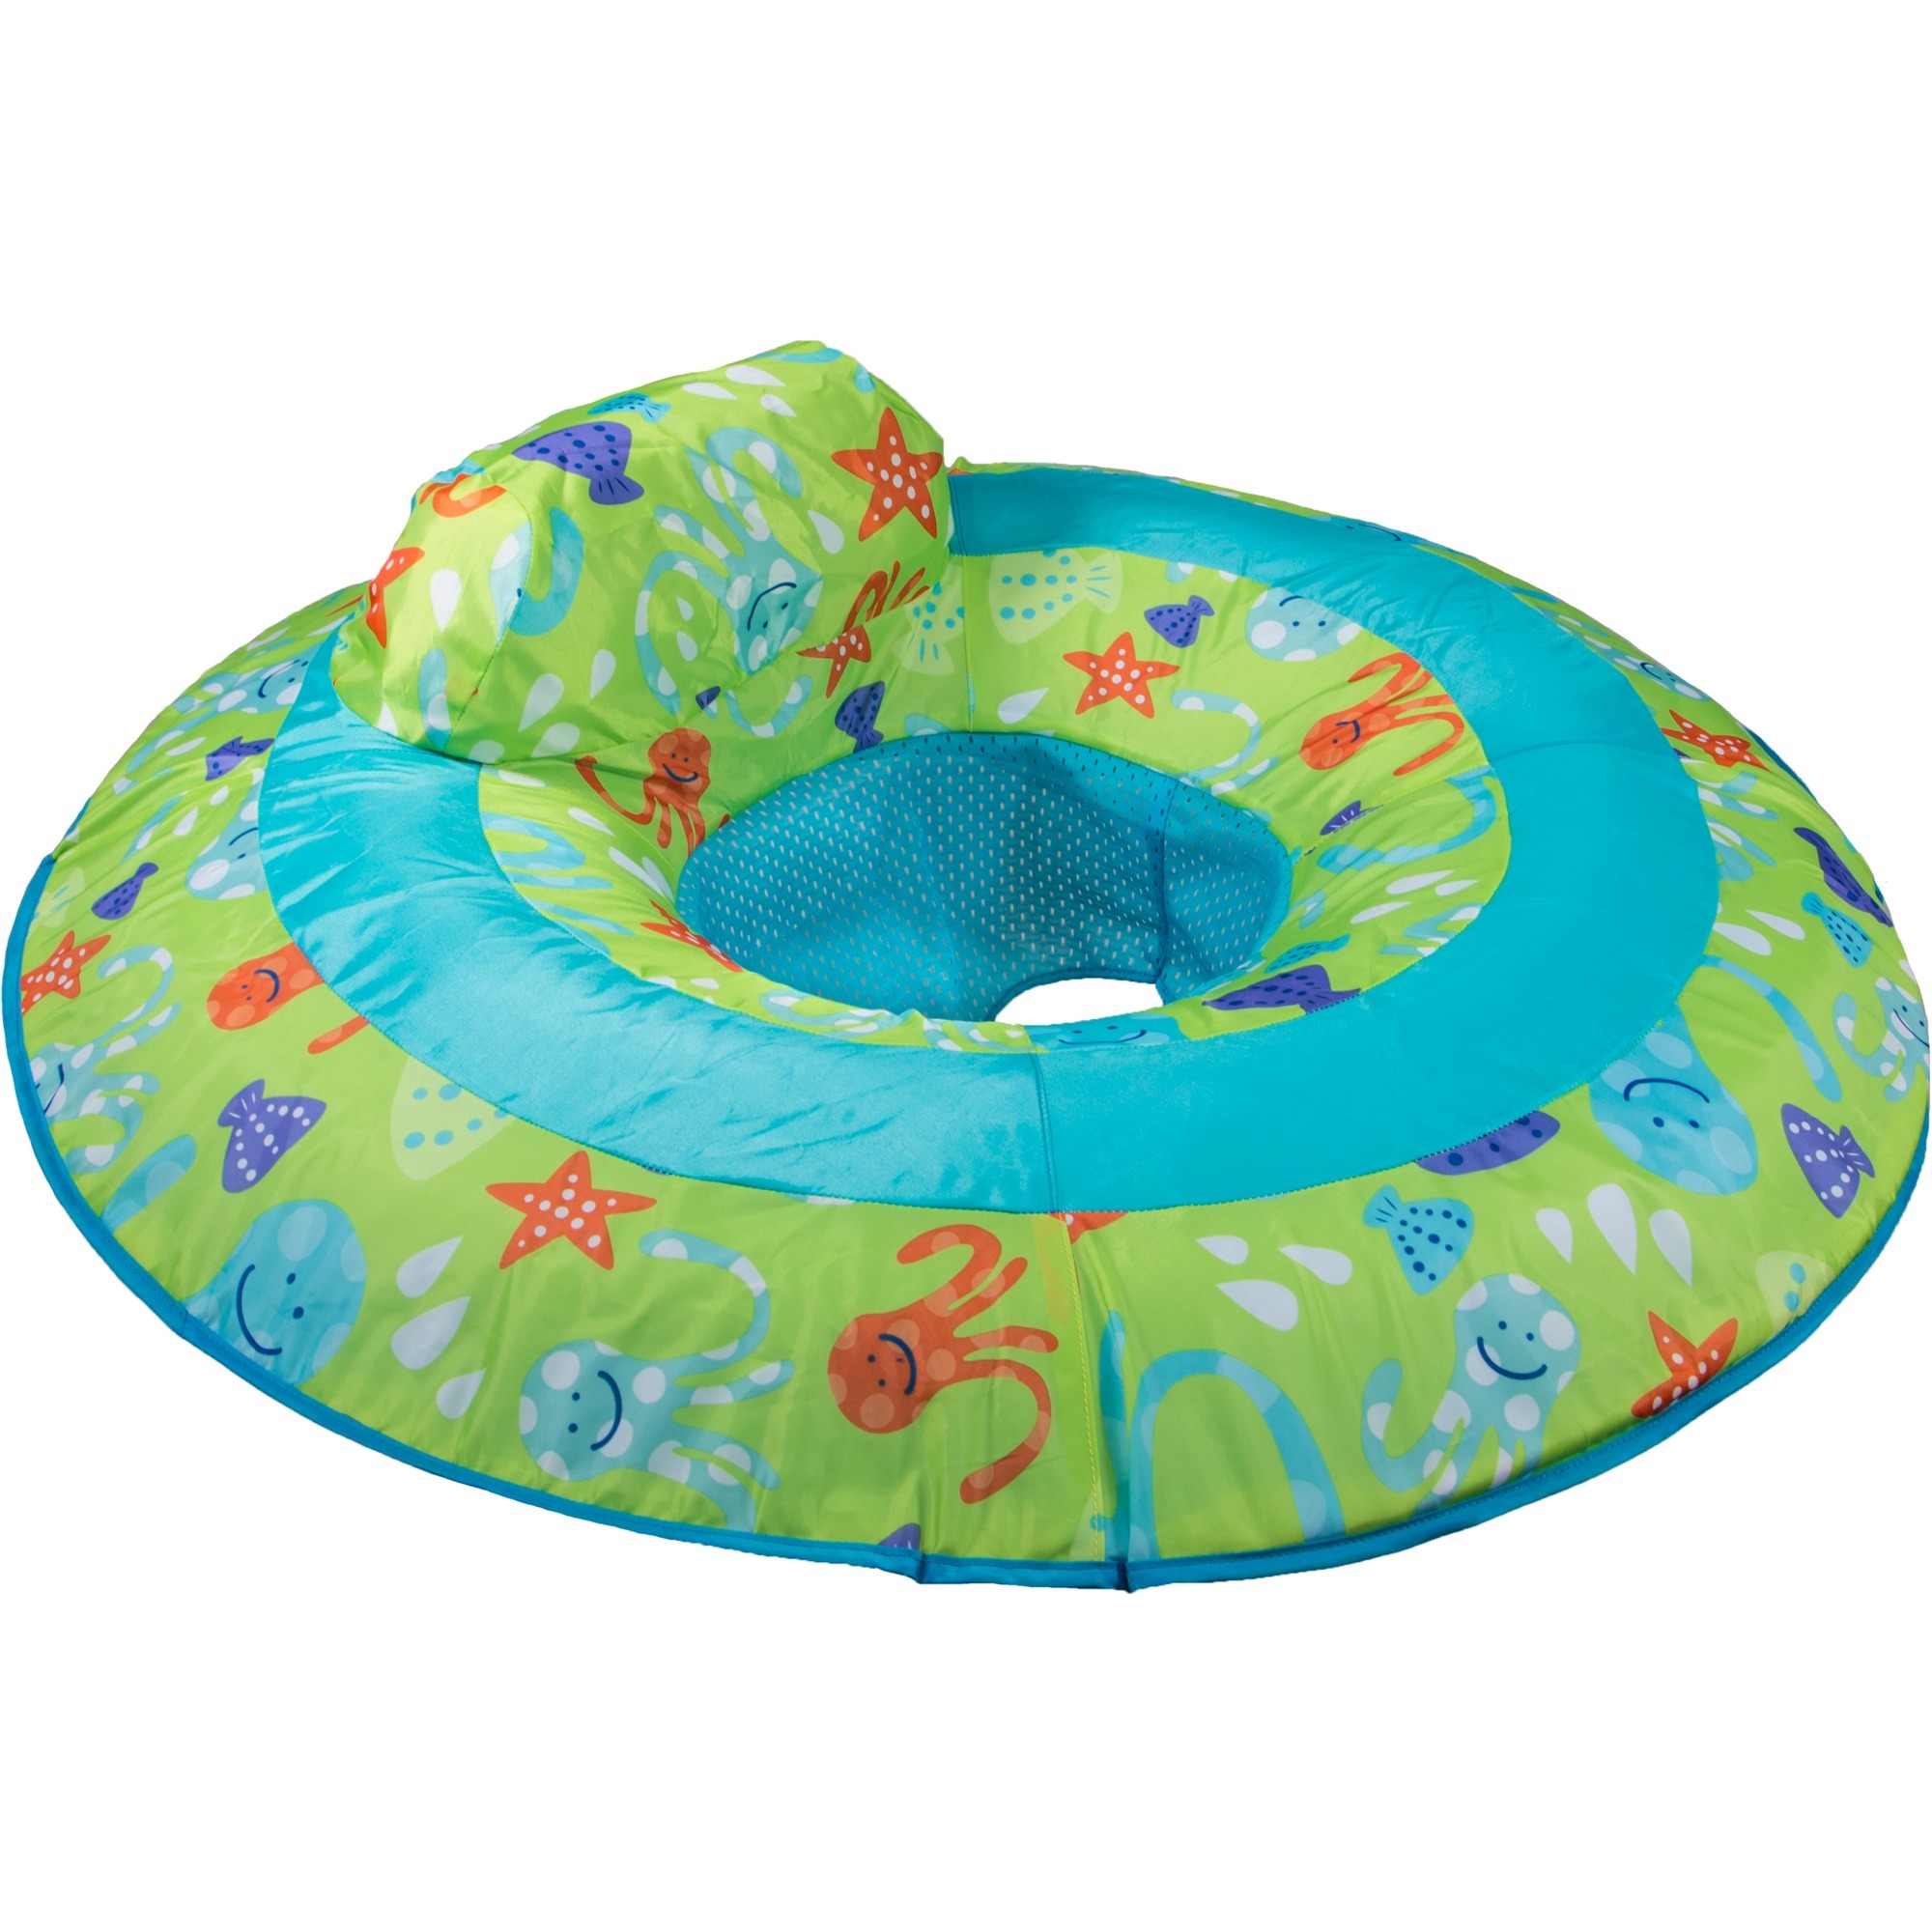 Image of Alternate - Swimmways Baby Spring Float, Schwimmring online einkaufen bei Alternate